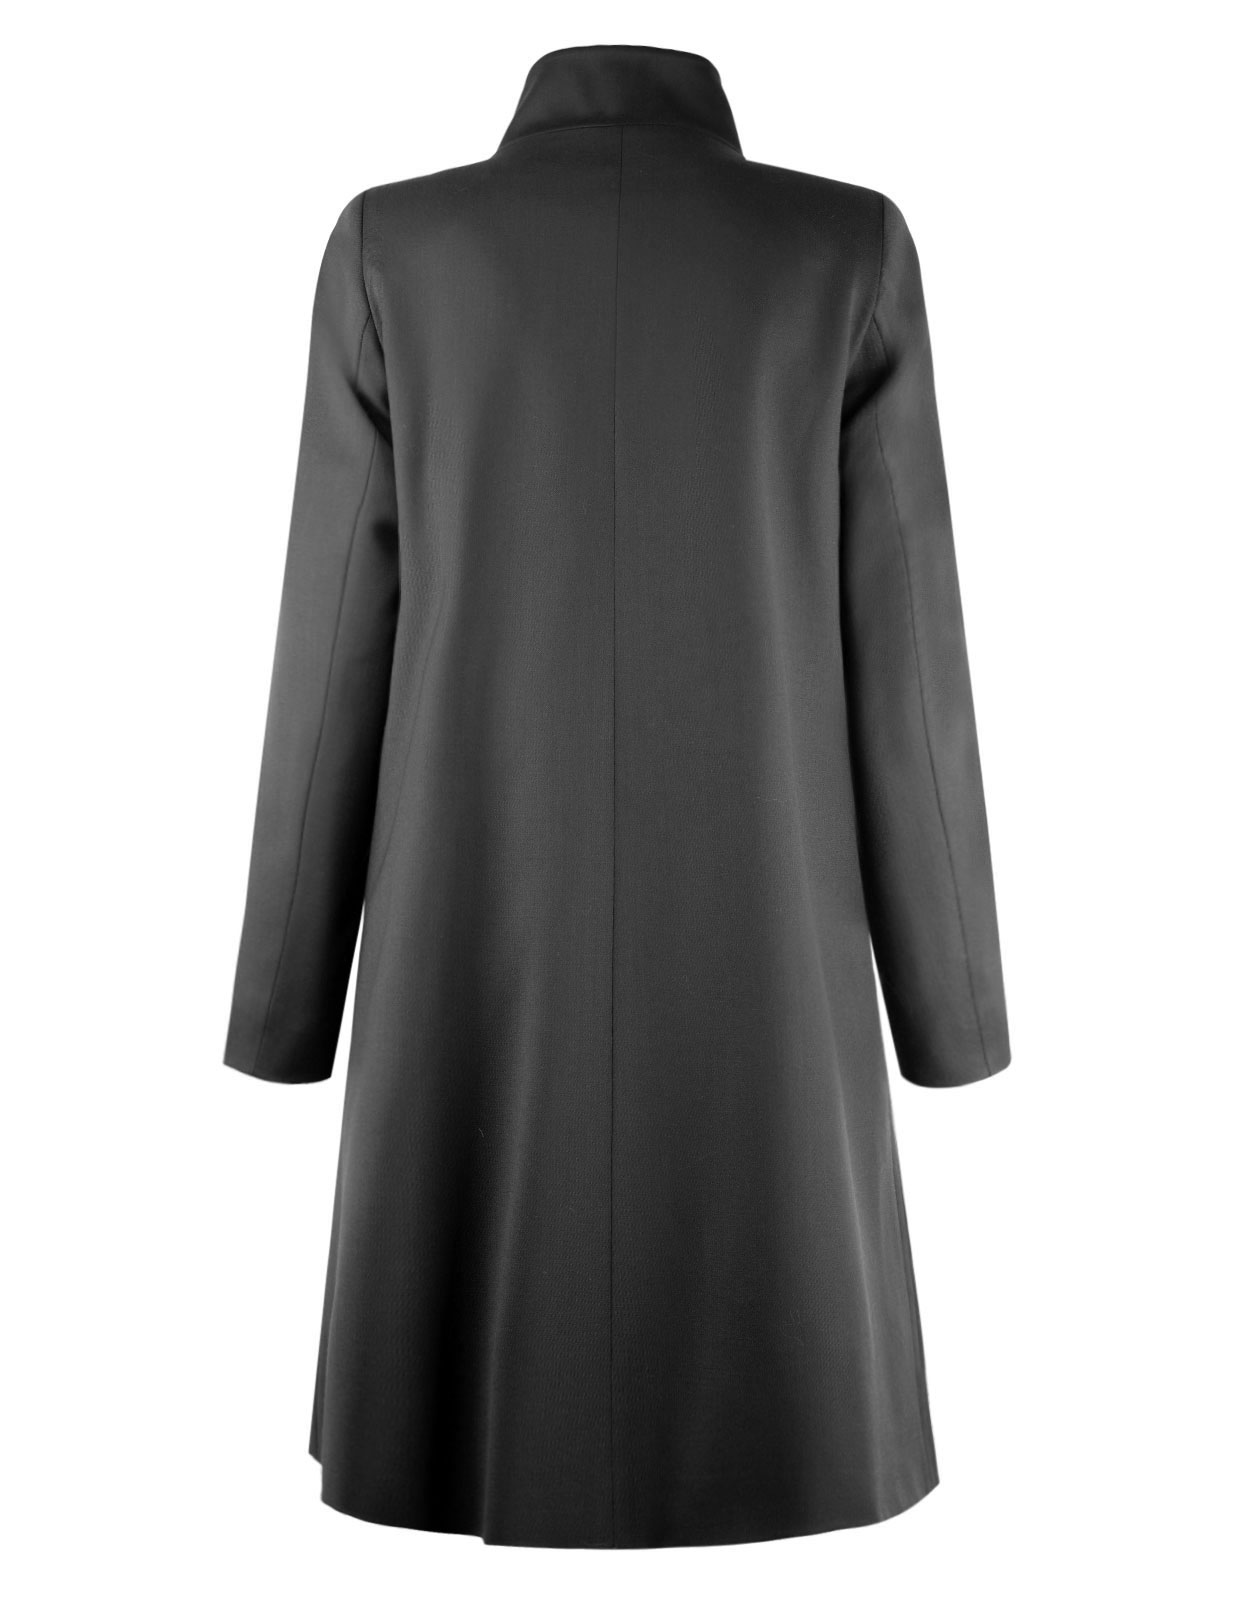 Wool Coat A-line Black